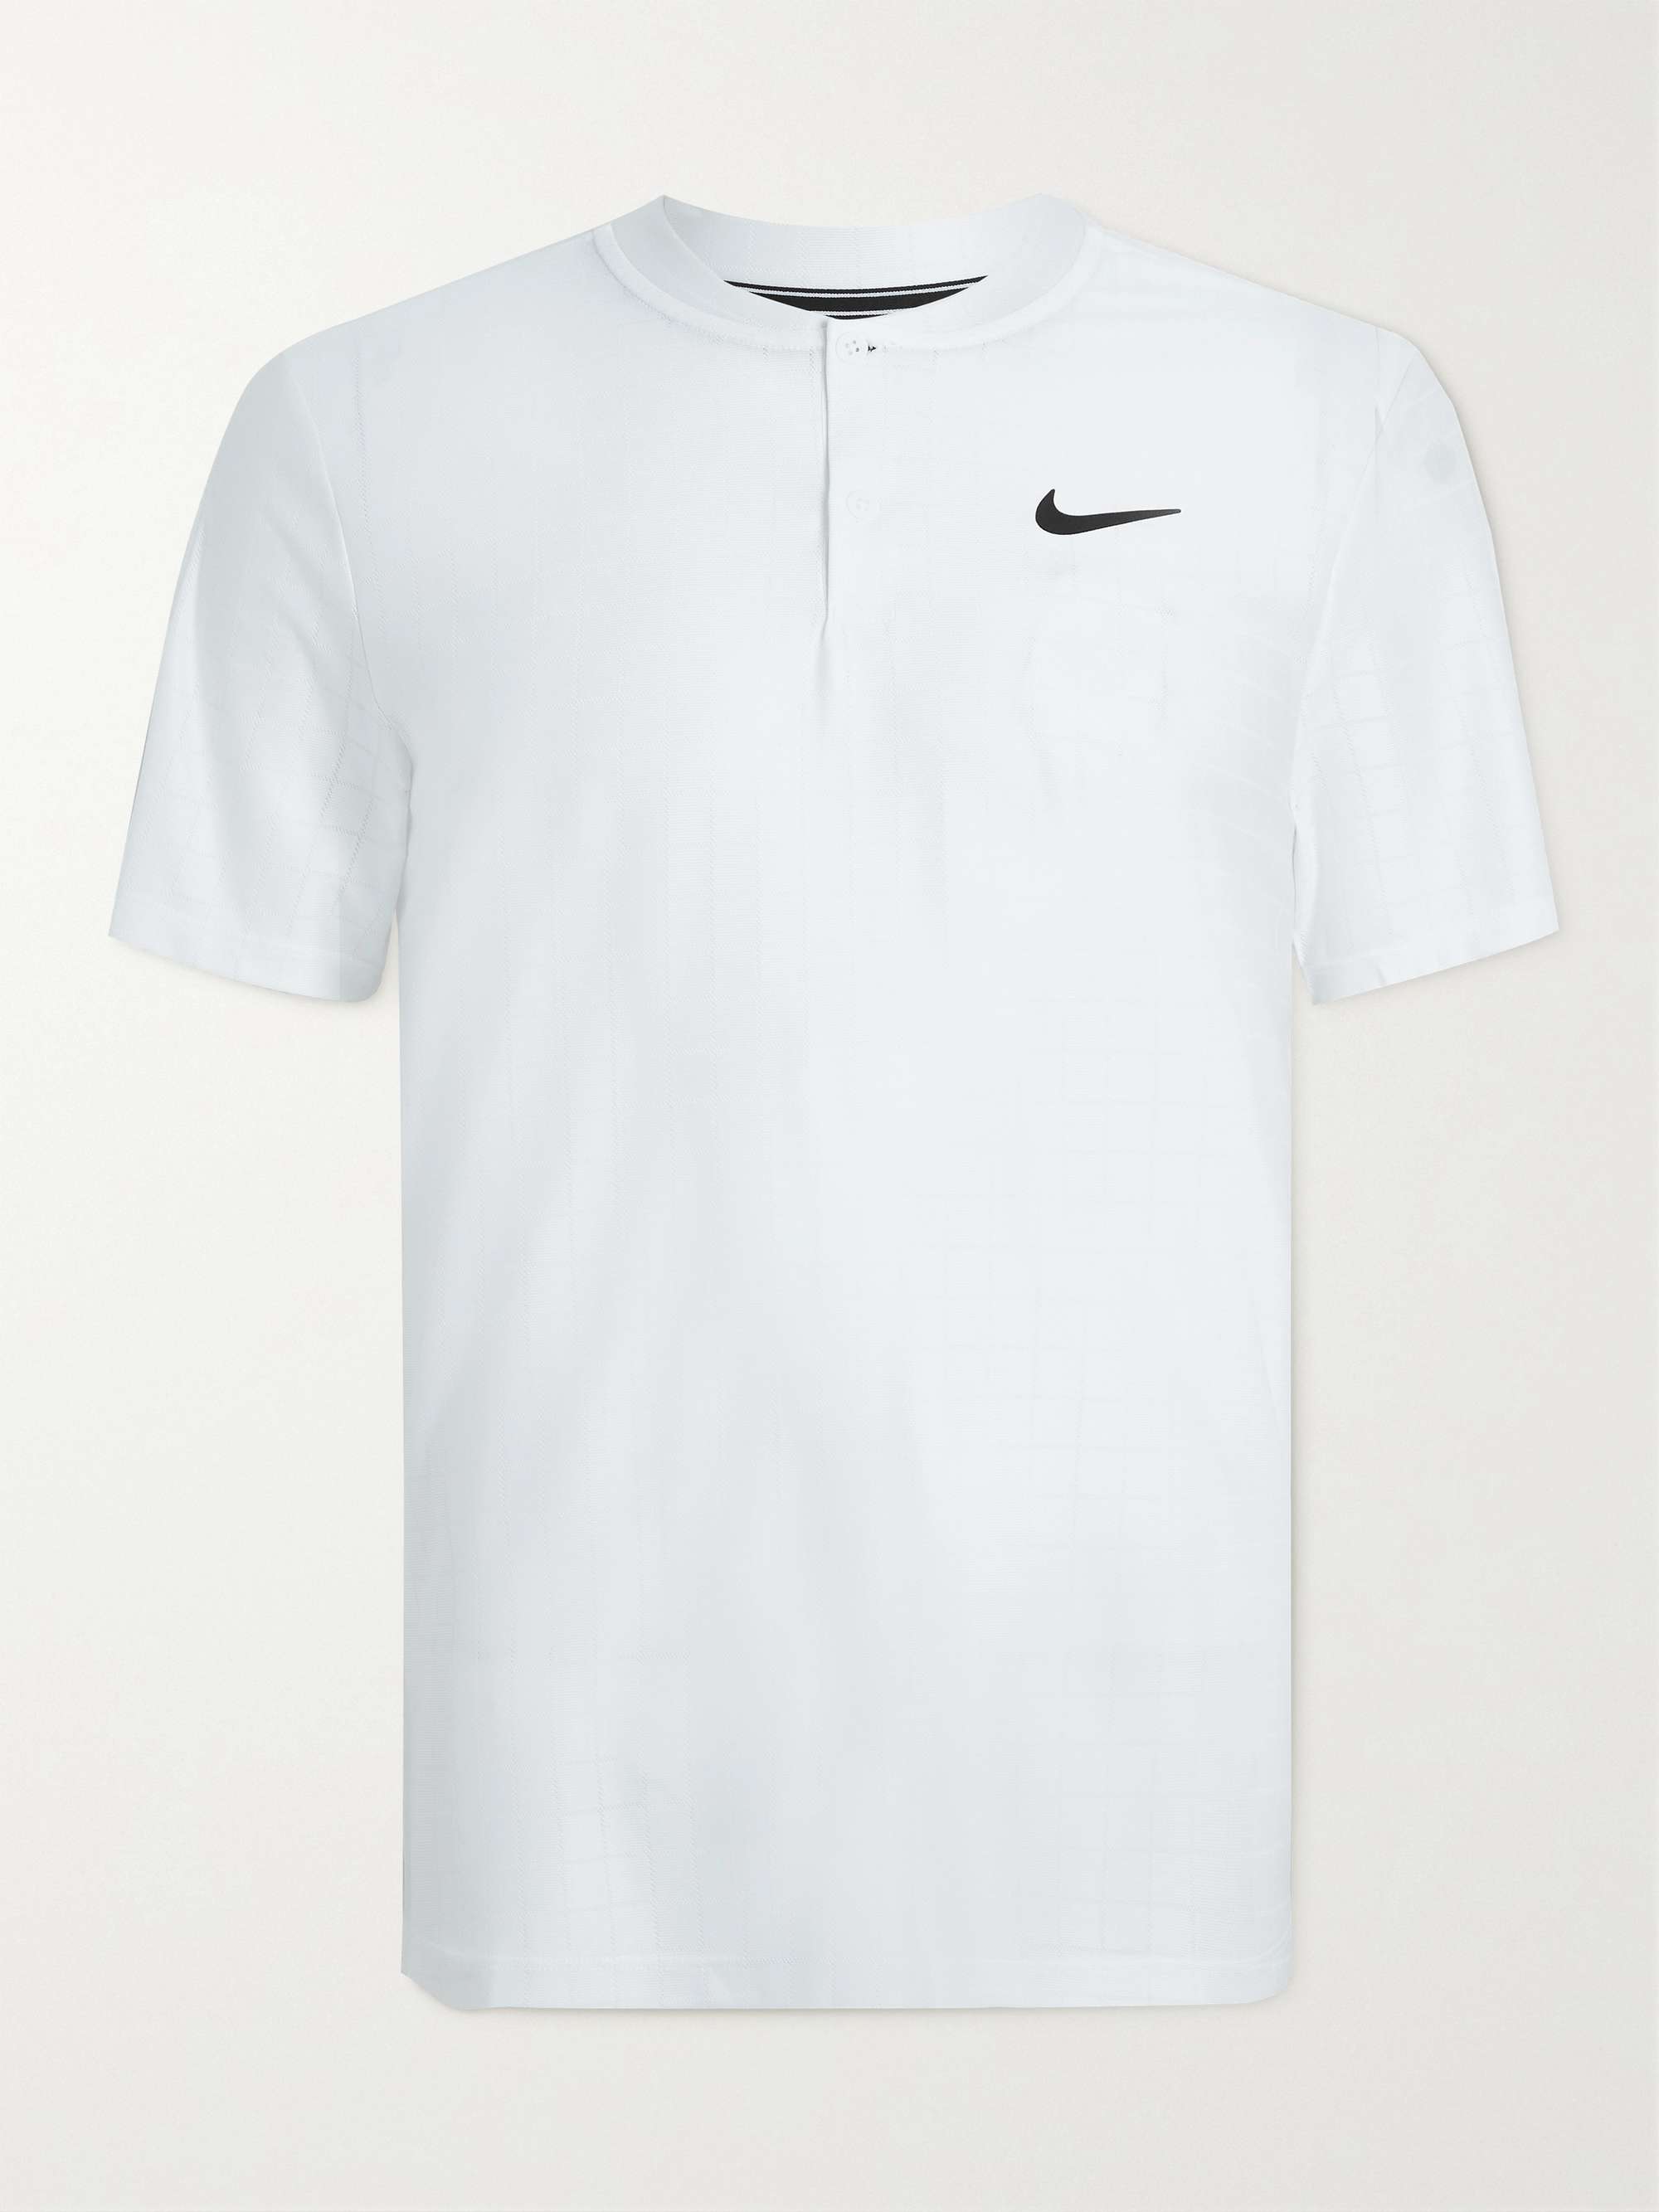 NIKE TENNIS ADV Dri-FIT Tennis Polo Shirt